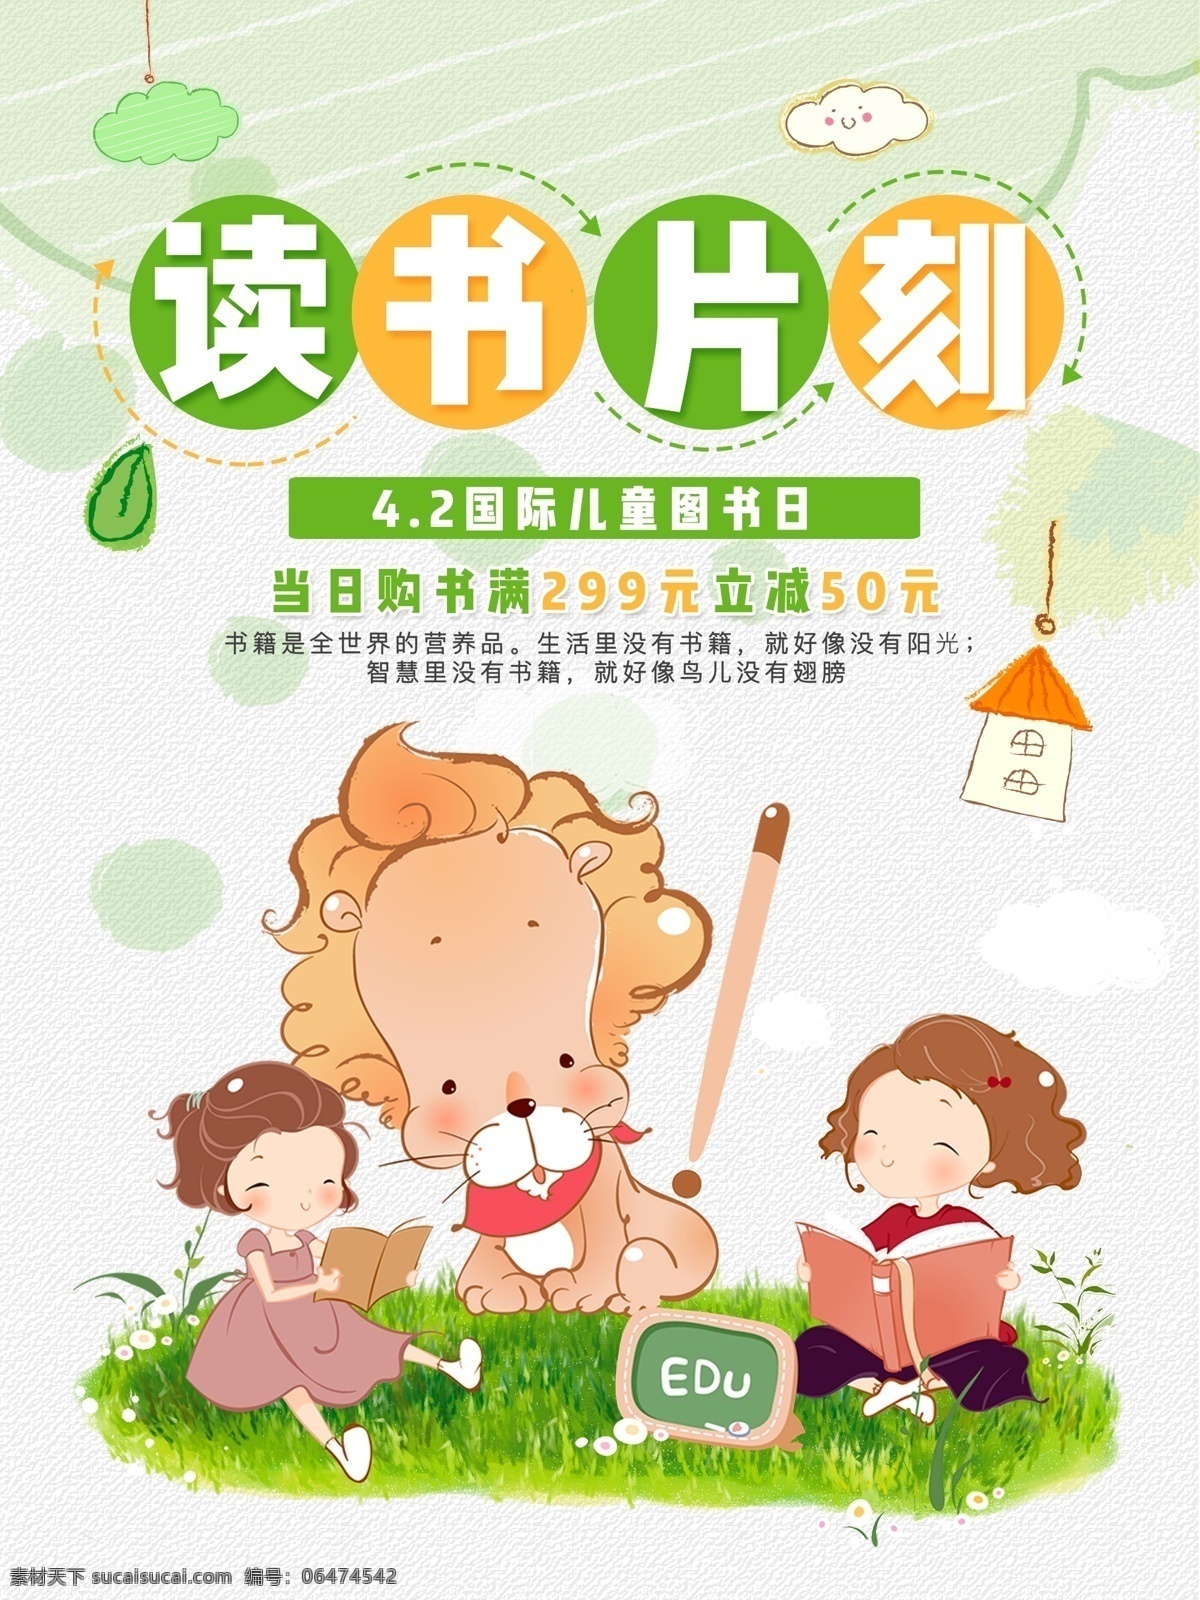 绿色 清新 国际 儿童 图书 日 读书 阅读 海报 图书促销 读书片刻 读书日